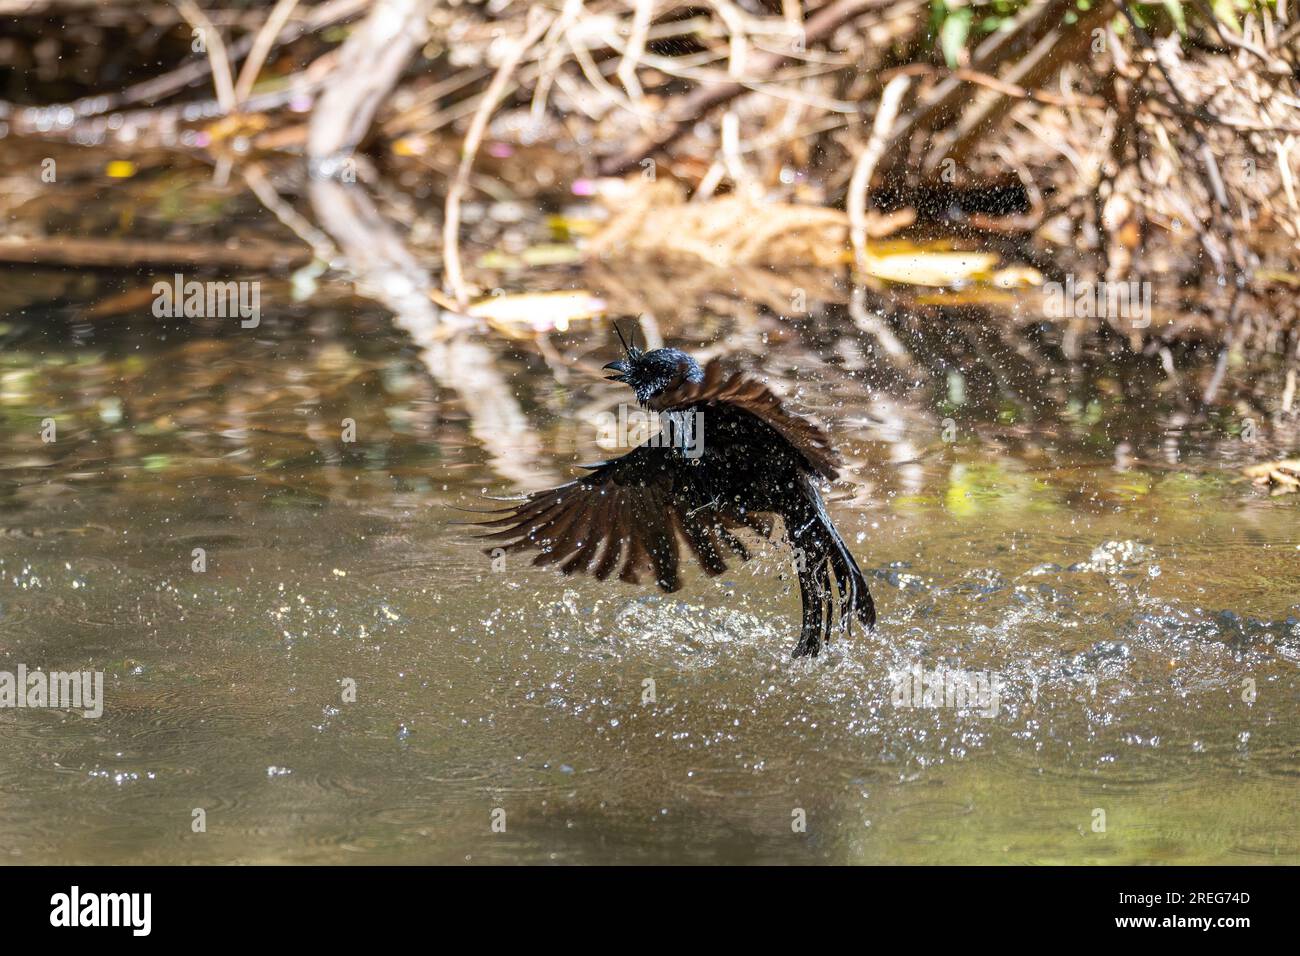 Drongo (Dicrurus Forficatus), endemischer Passerinvogel in der Familie Dicruridae badet im Fluss, Ranomafana. Madagaskar Wildtiere Stockfoto